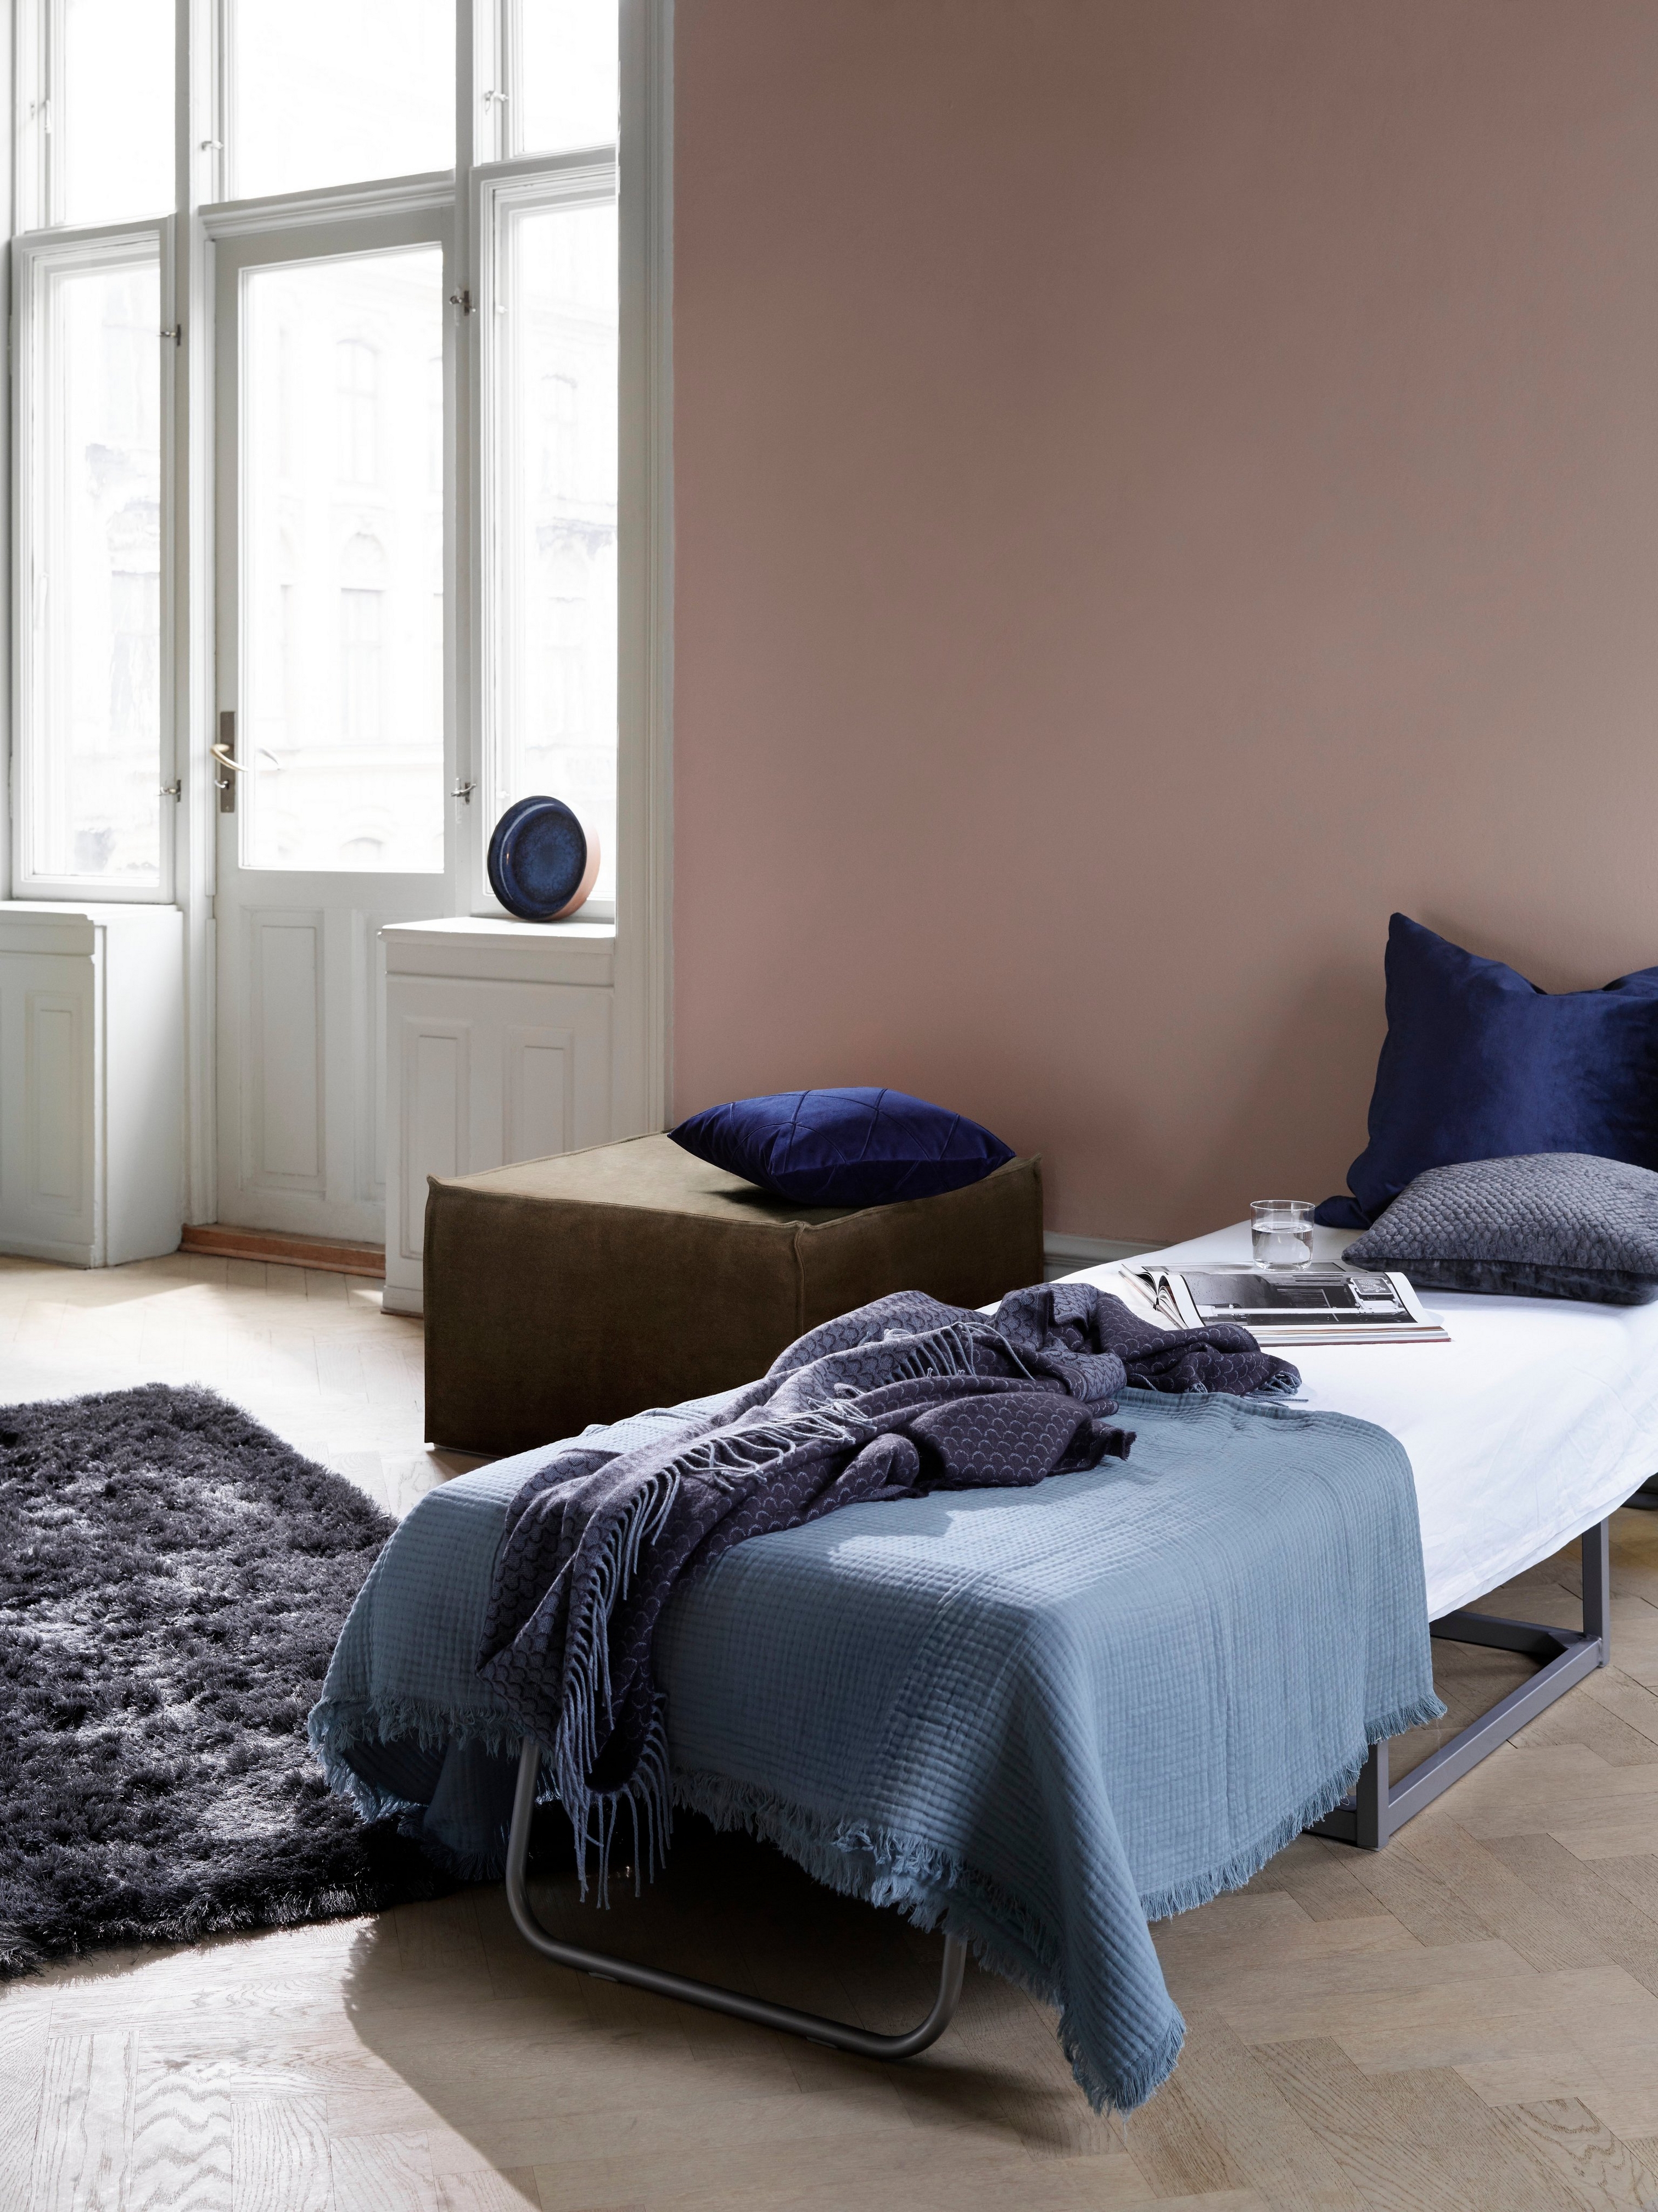 Einladendes Zimmer mit Gästebett, blauer Bettwäsche und dunklem flauschigem Teppich in der Nähe von hellen Fenstern mit dem Xtra Hocker.